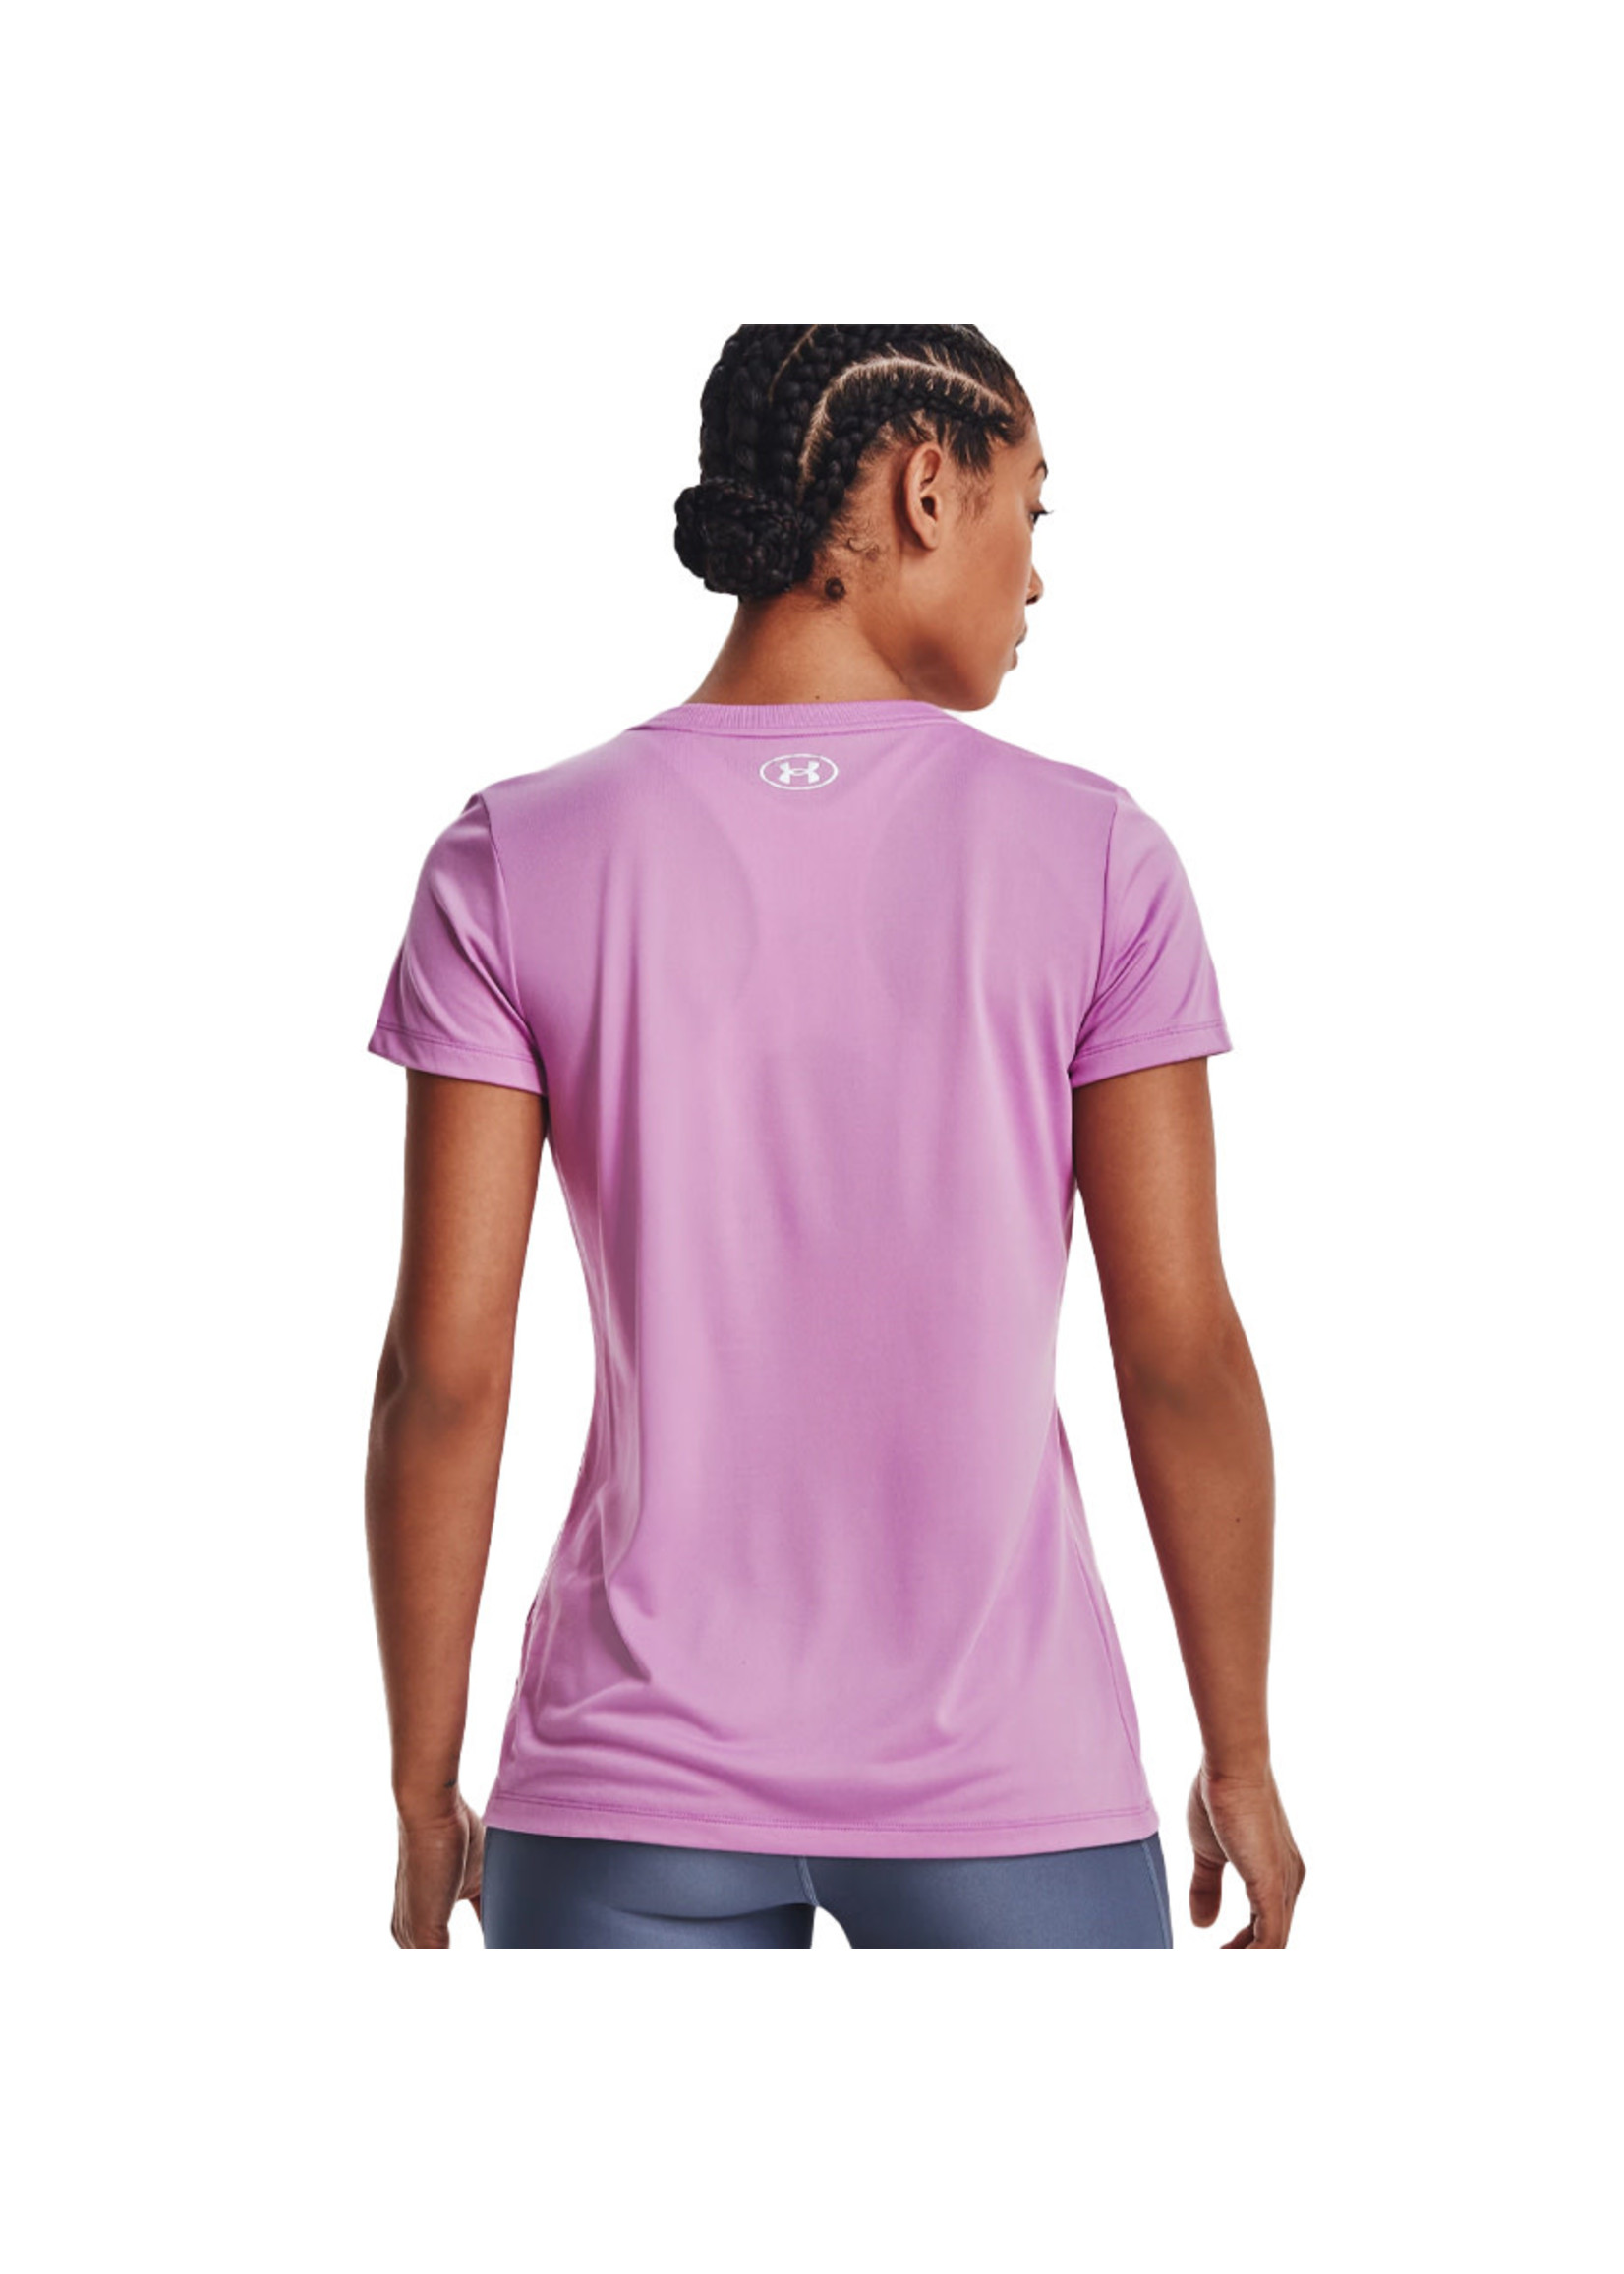 UNDER ARMOUR T-shirt UA TECH SCRIPT LOGO (Femme)